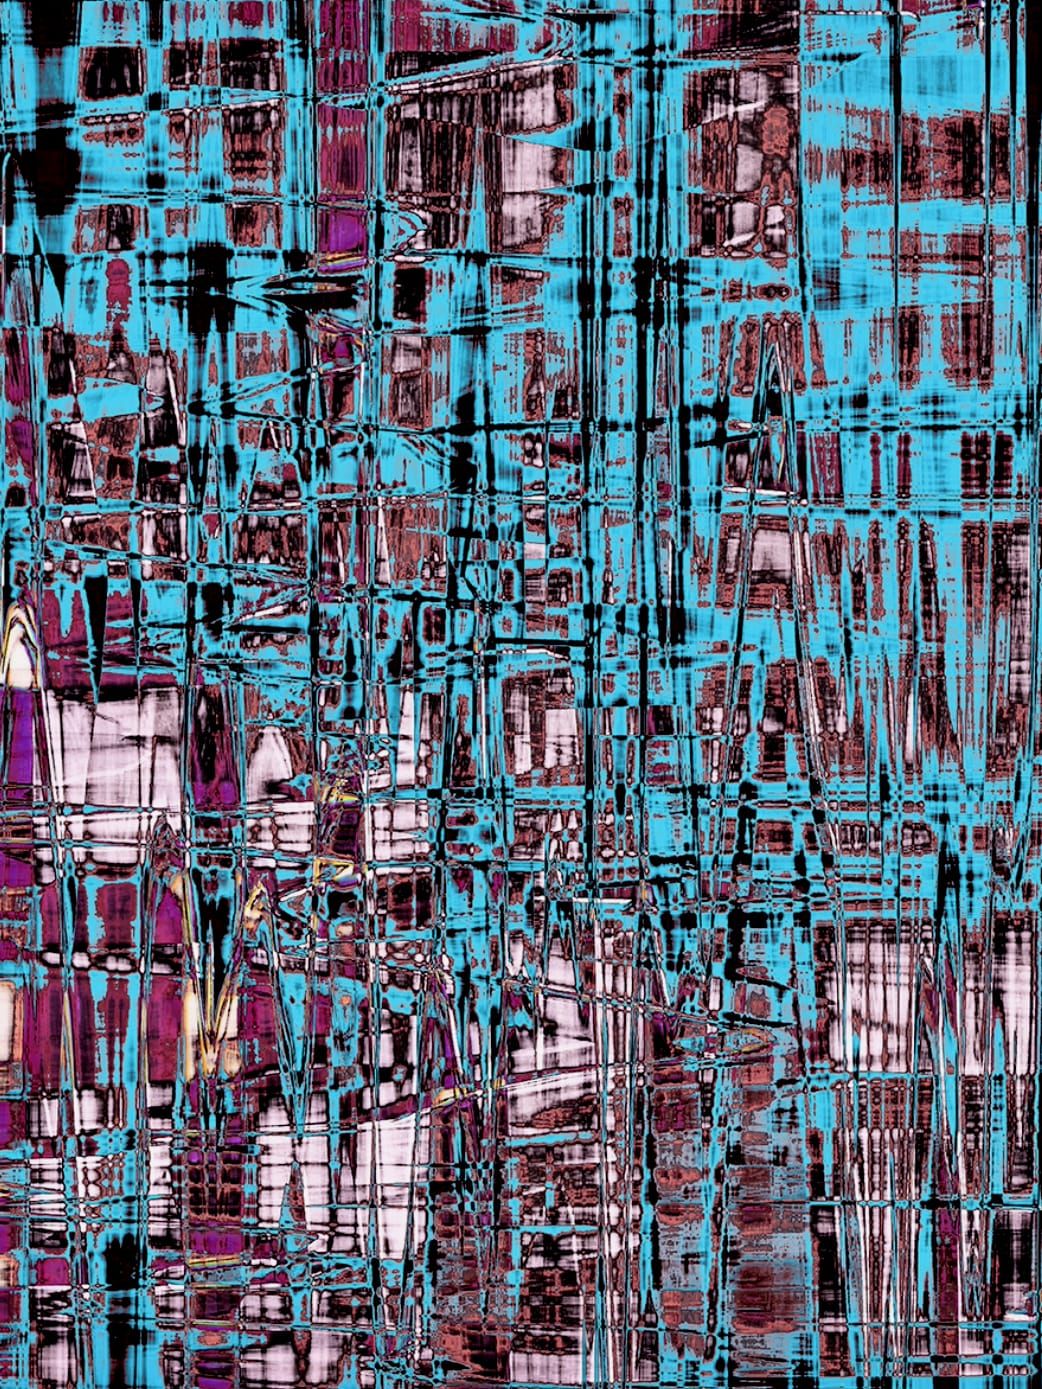 Fotografia, Scanografia di Michael Monney alias acylmx, Immagine astratta in blu, rosa e viola.